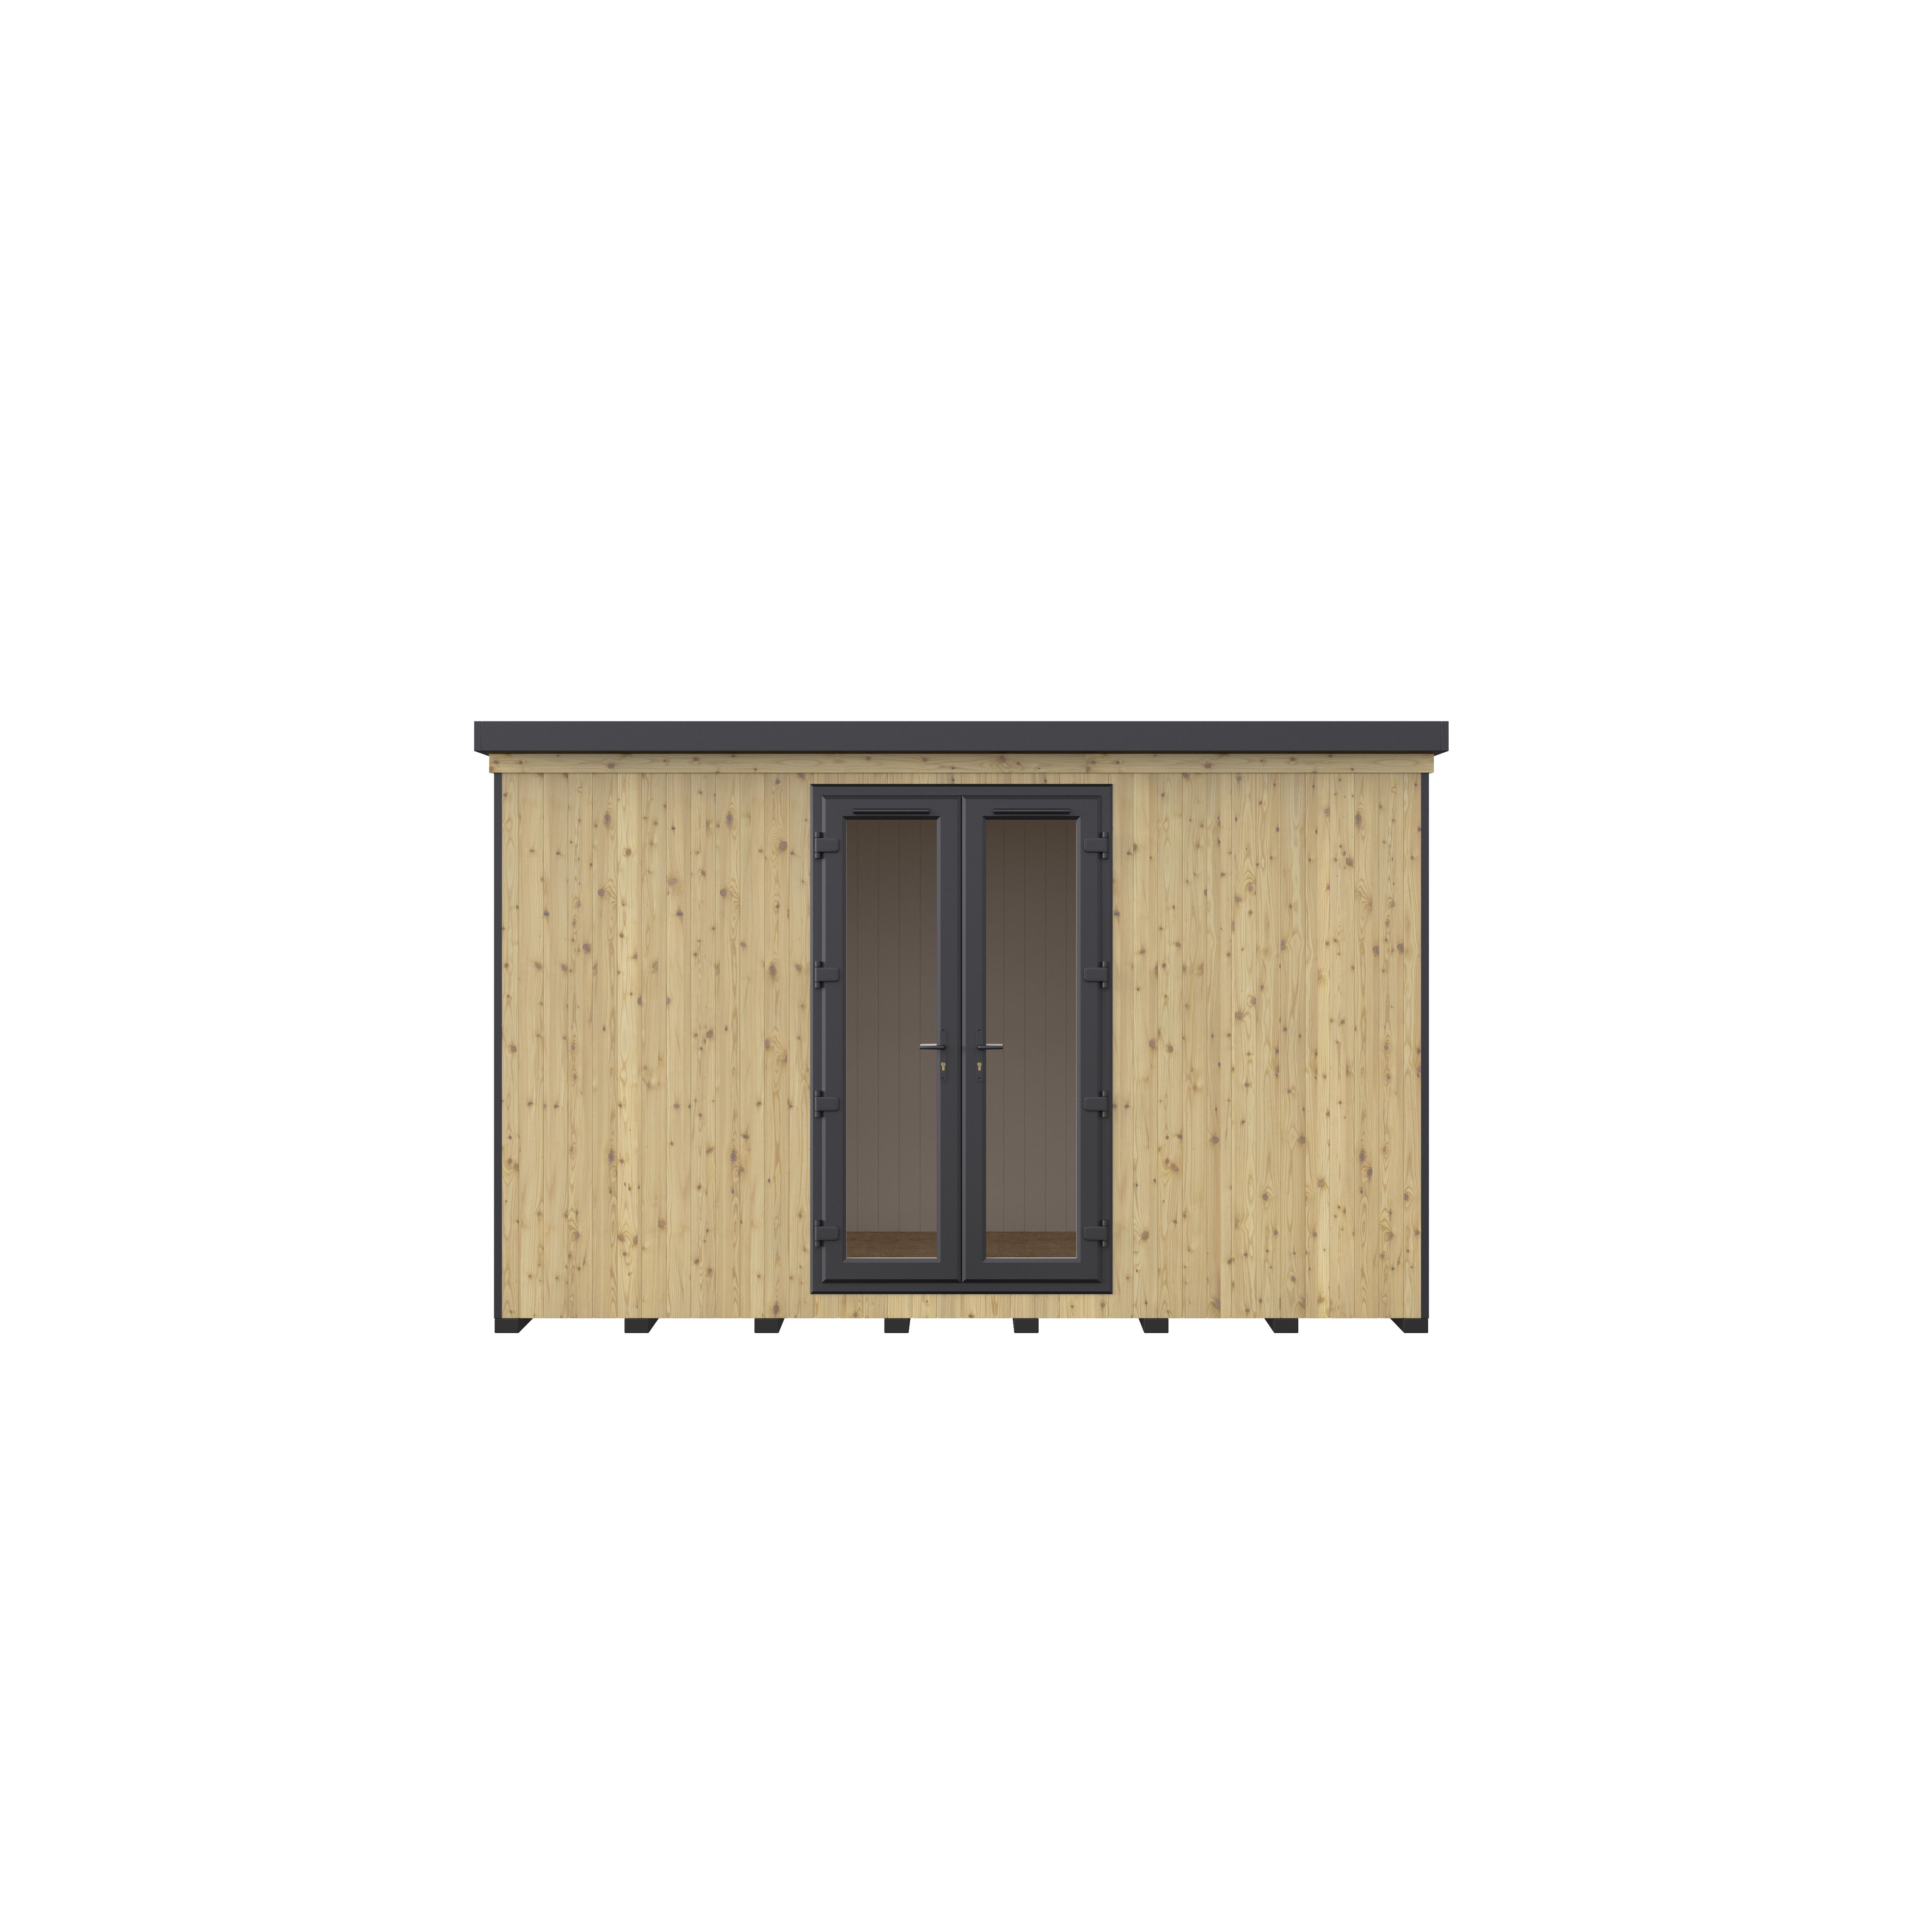 GoodHome Semora 13x8 ft with Double door Pent Wooden Garden room 2.4m x 3.8m (Base included)